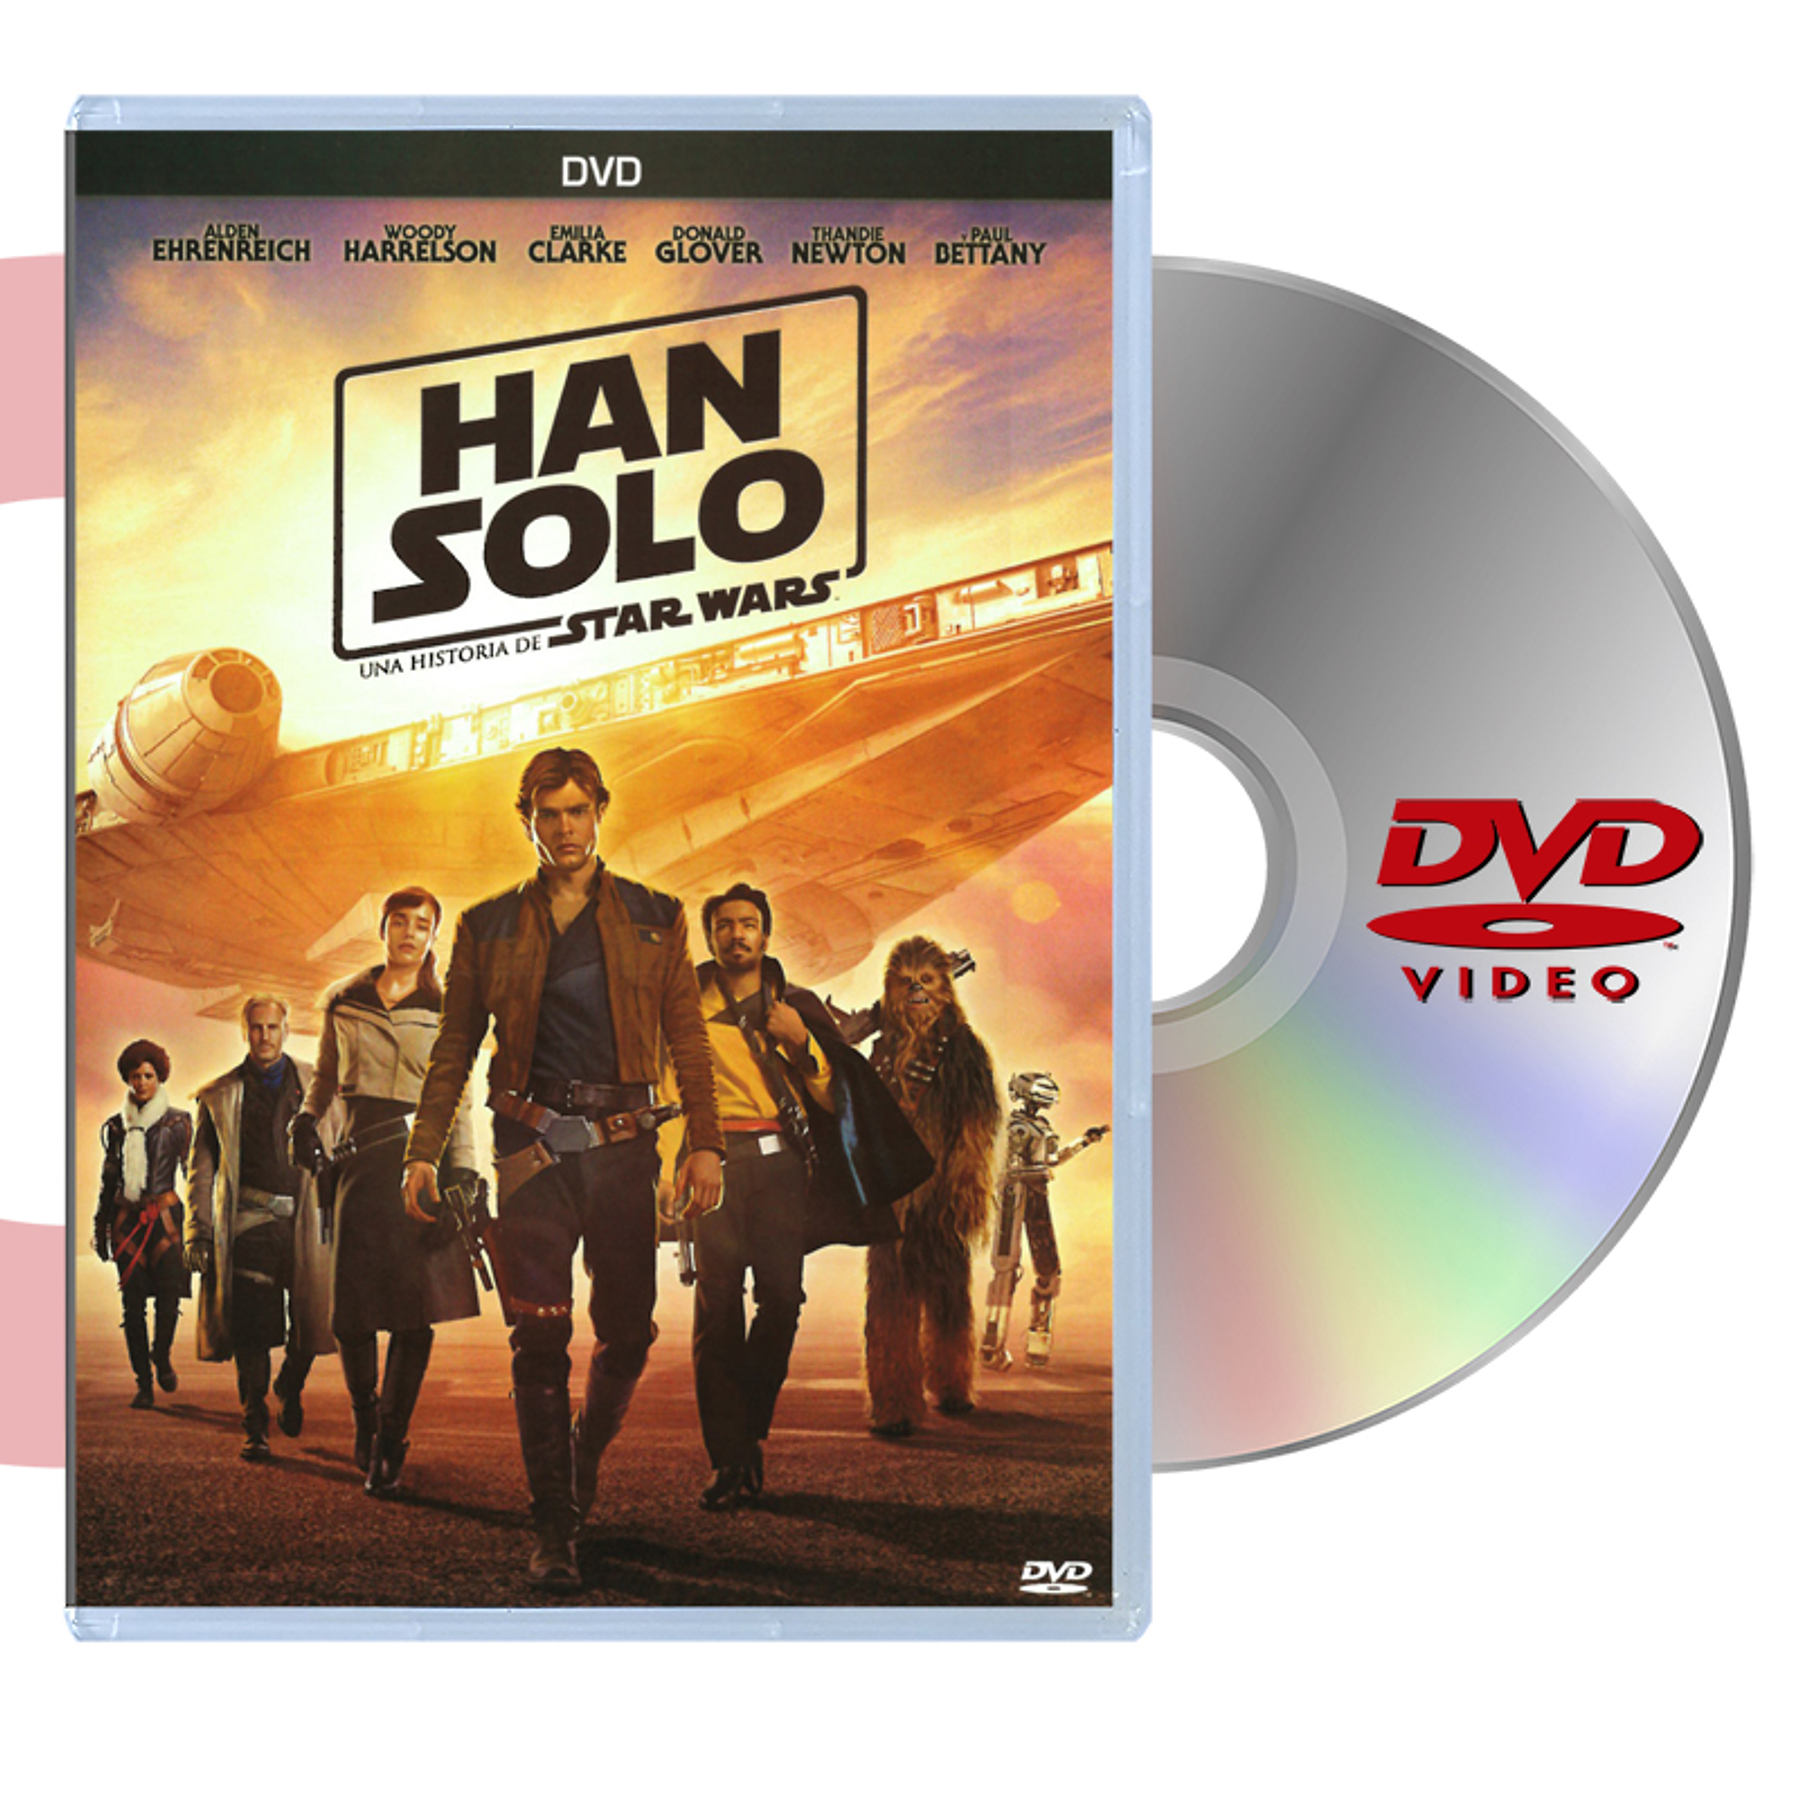 DVD HAN SOLO UNA HISTORIA DE STAR WARS